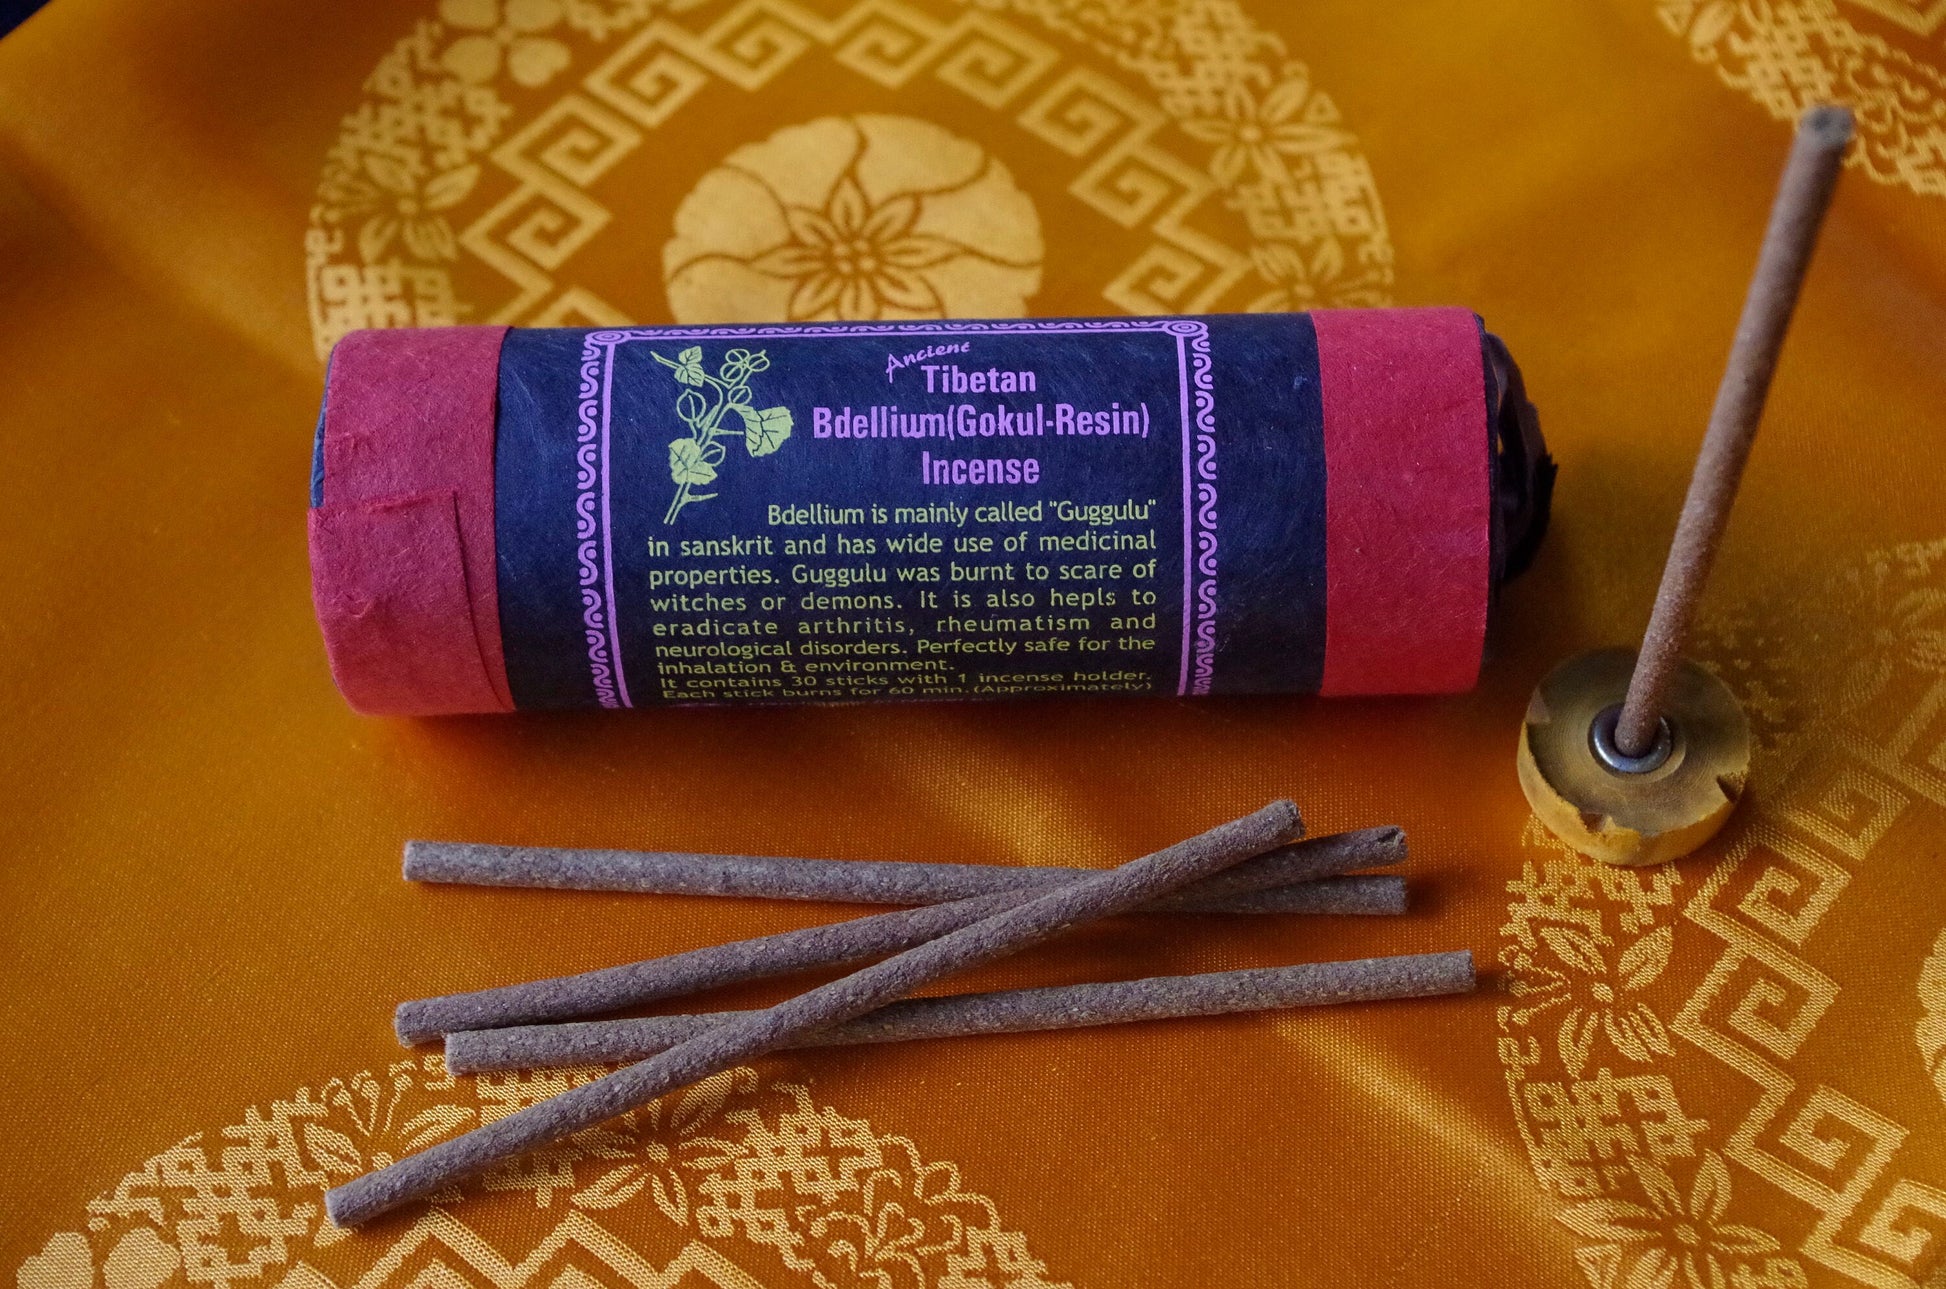 Bdellium (Gokul resin) incense | Tibetan Incense | 30 sticks